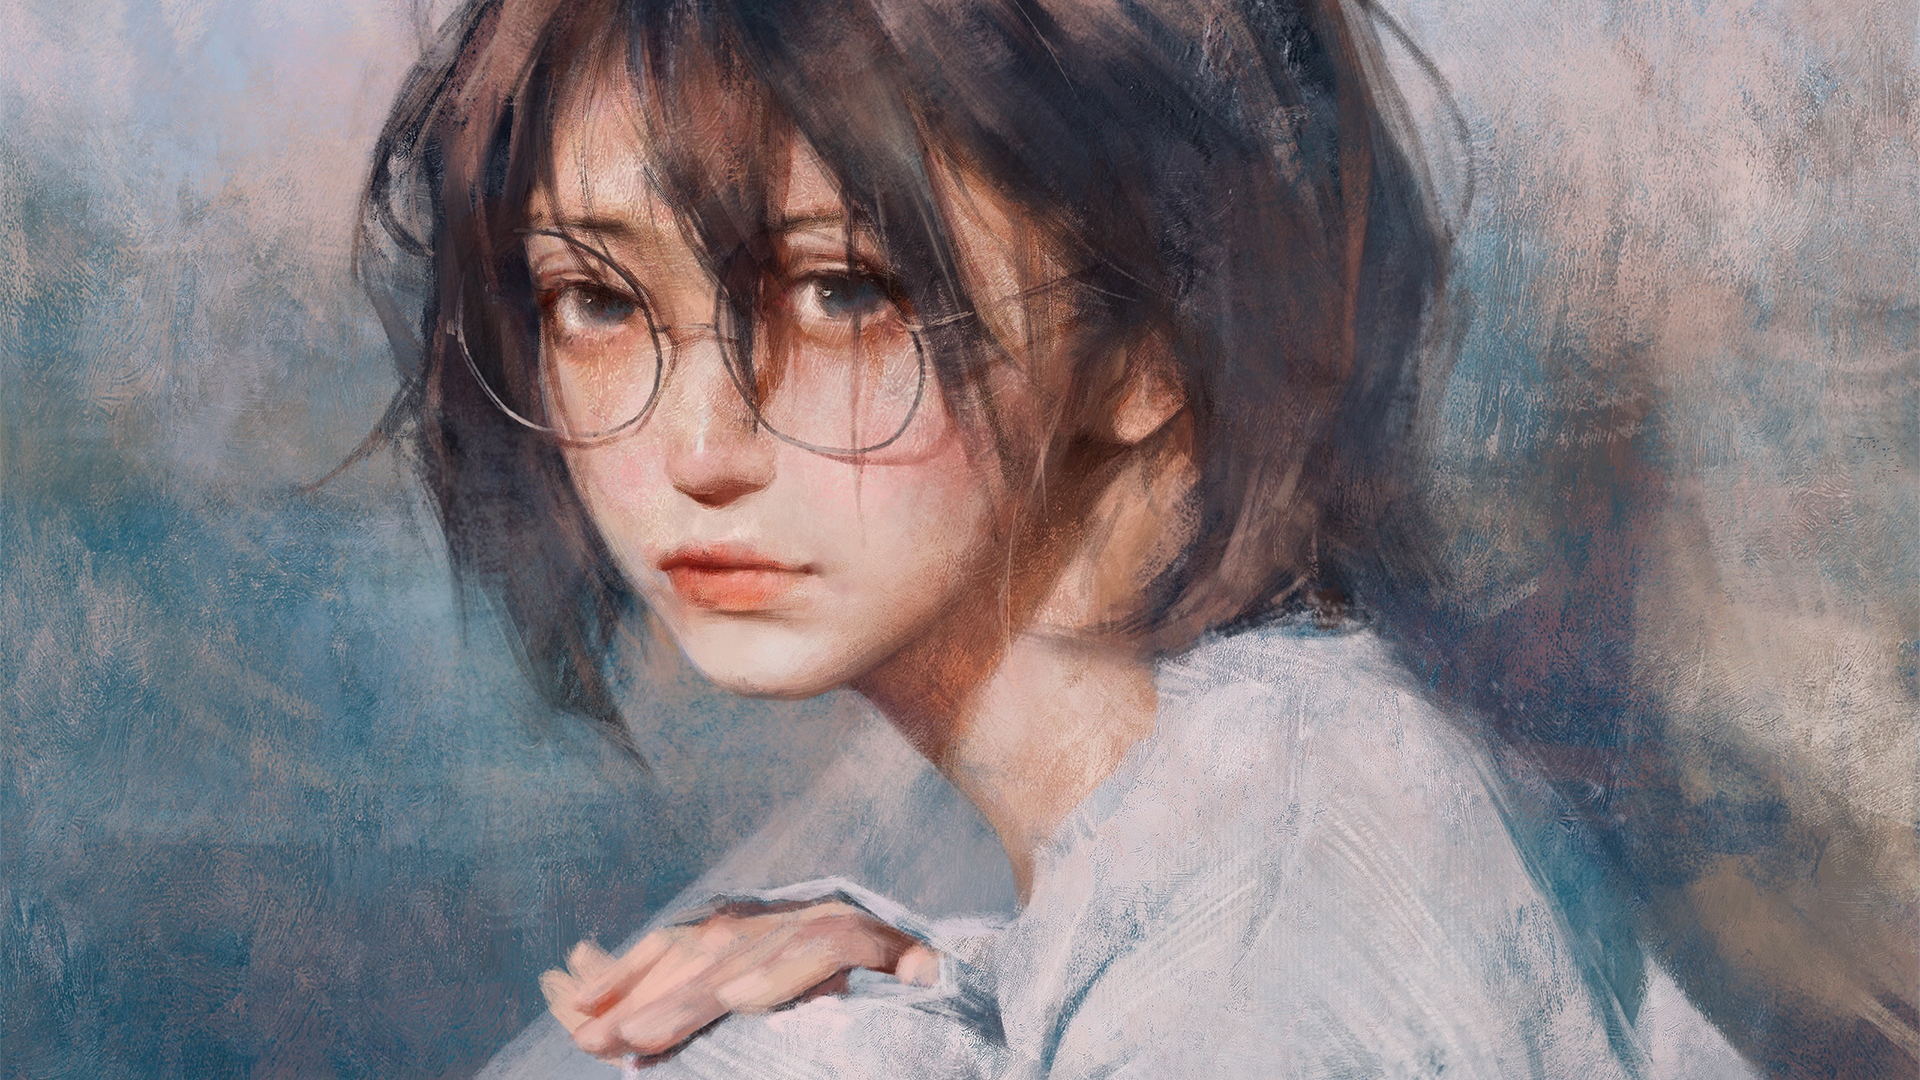 Artwork Anime Girls Short Hair Glasses Handrail White T Shirt Digital Art 1920x1080